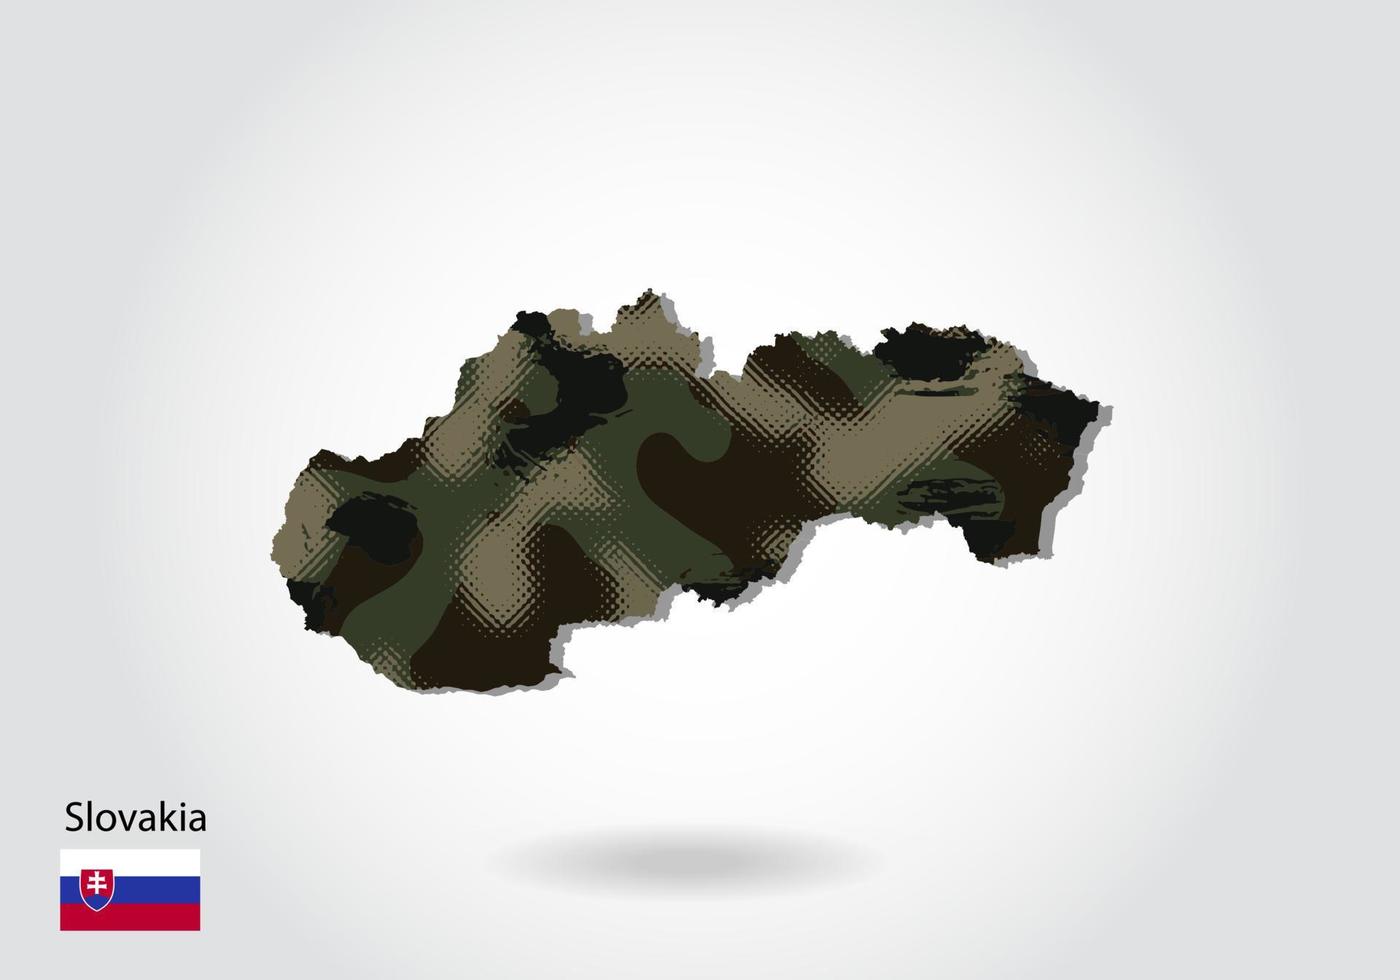 mapa de eslovaquia con patrón de camuflaje, bosque - textura verde en el mapa. concepto militar para ejército, soldado y guerra. escudo de armas, bandera. vector